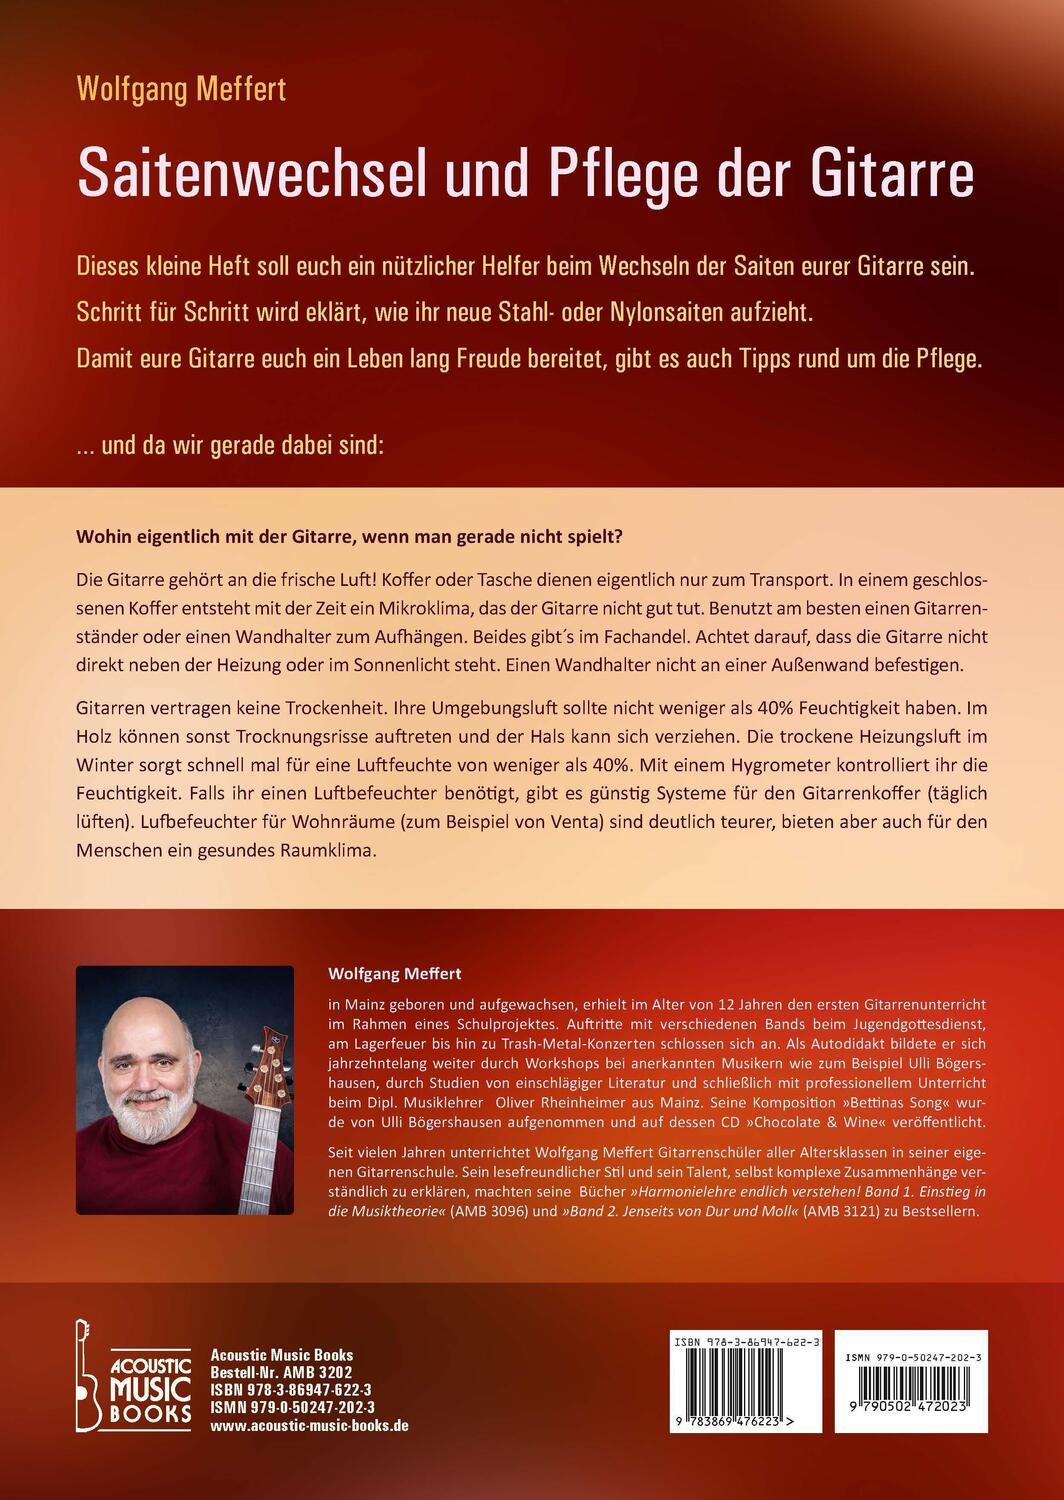 Bild: 9783869476223 | Saitenwechsel und Pflege der Gitarre | Wolfgang Meffert | Broschüre